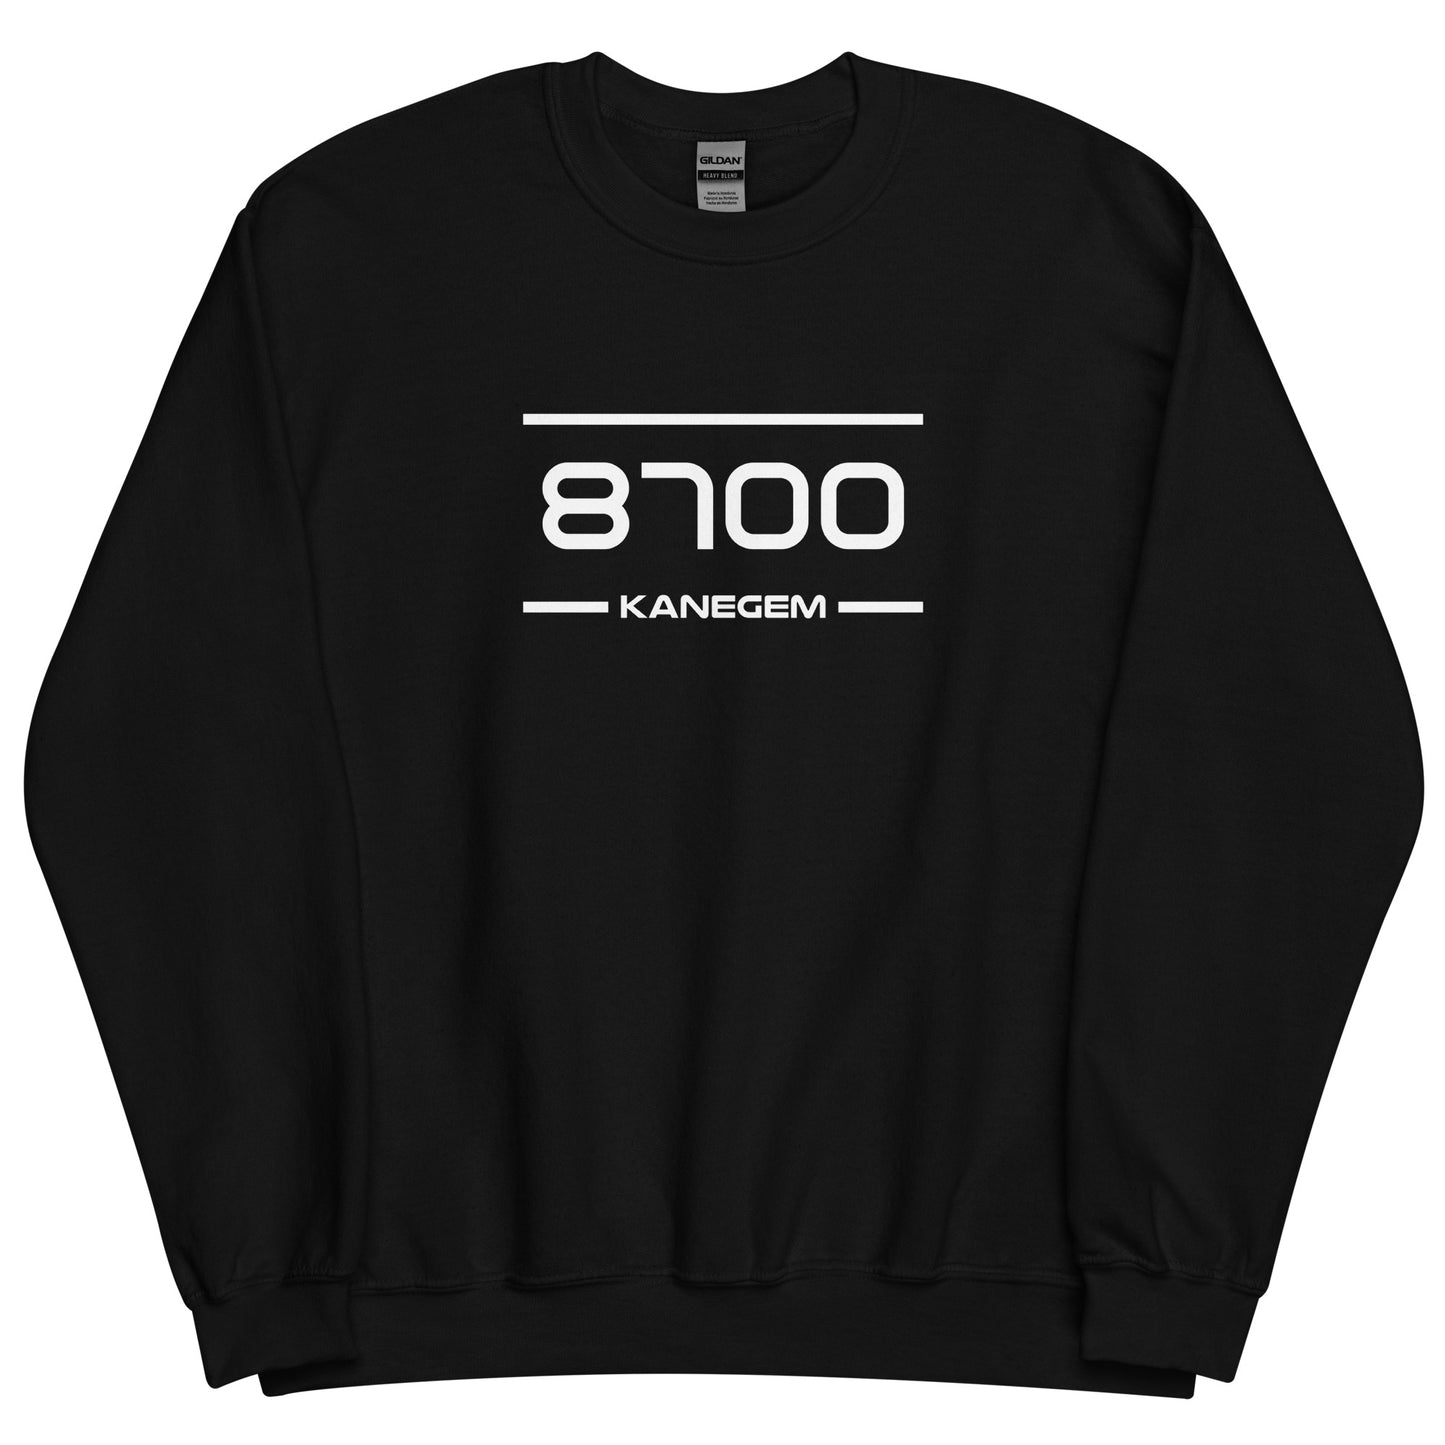 Sweater - 8700 - Kanegem (M/V)